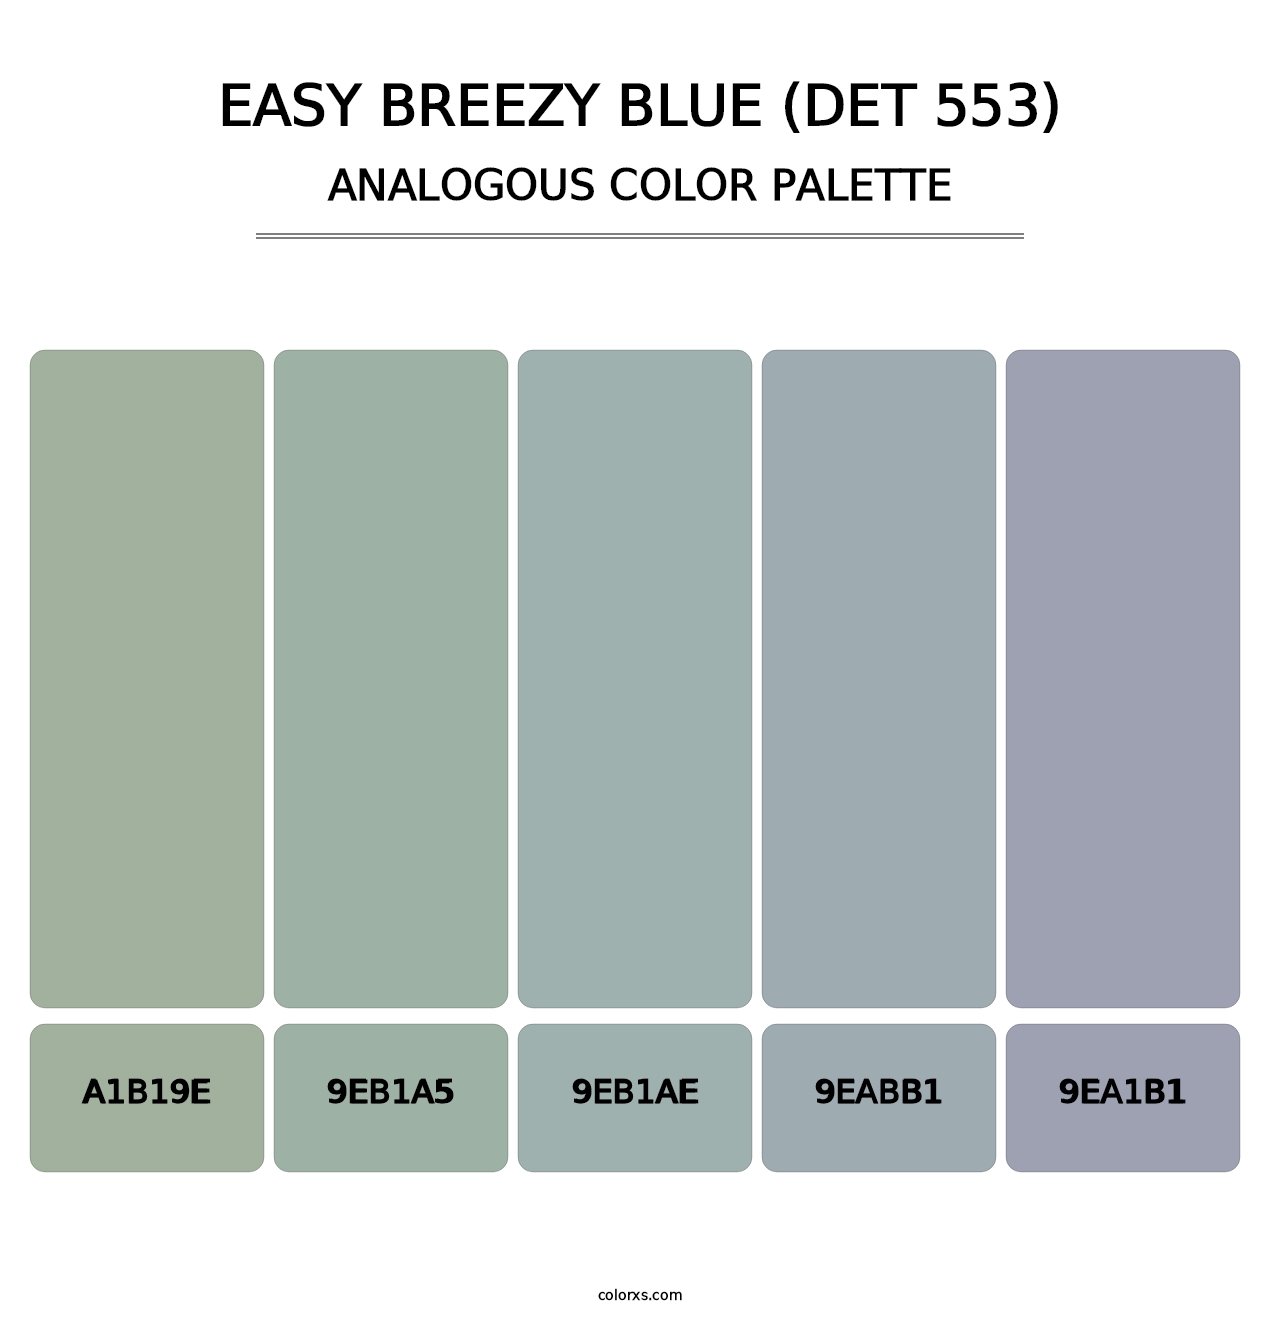 Easy Breezy Blue (DET 553) - Analogous Color Palette